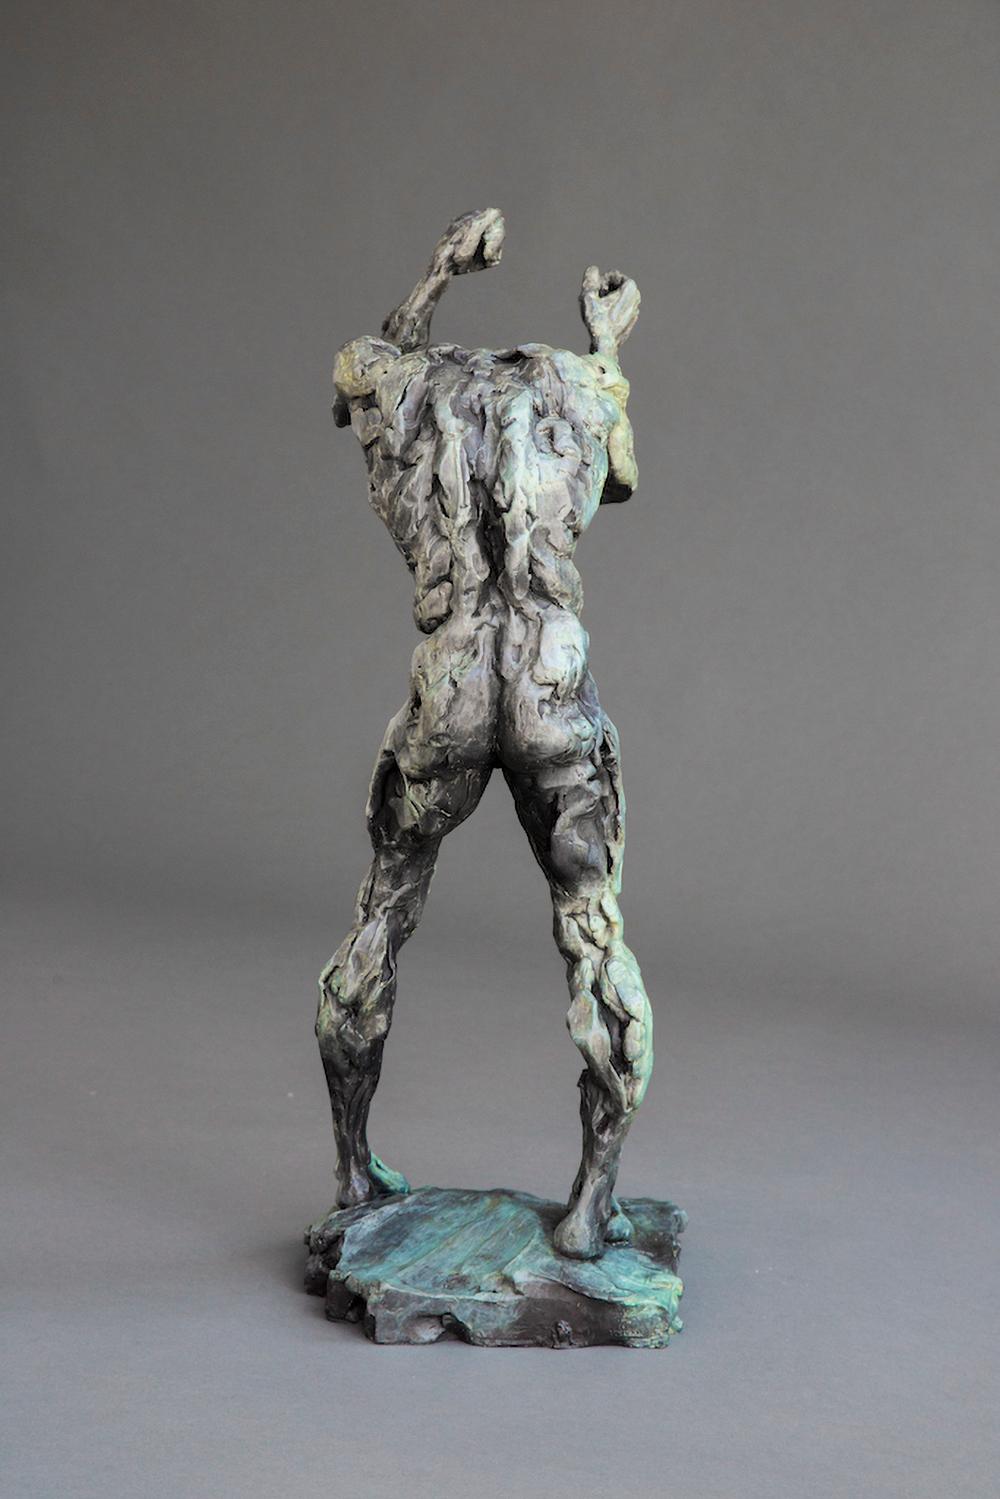 Diese kraftvolle Bronzeskulptur eines stehenden männlichen Aktes mit erhobenen Fäusten und gesenktem Kopf stammt von dem kanadischen Künstler Richard Tosczak. Bekannt für seine schönen figurativen Arbeiten, beginnen Tosczaks Werke mit schnellen,